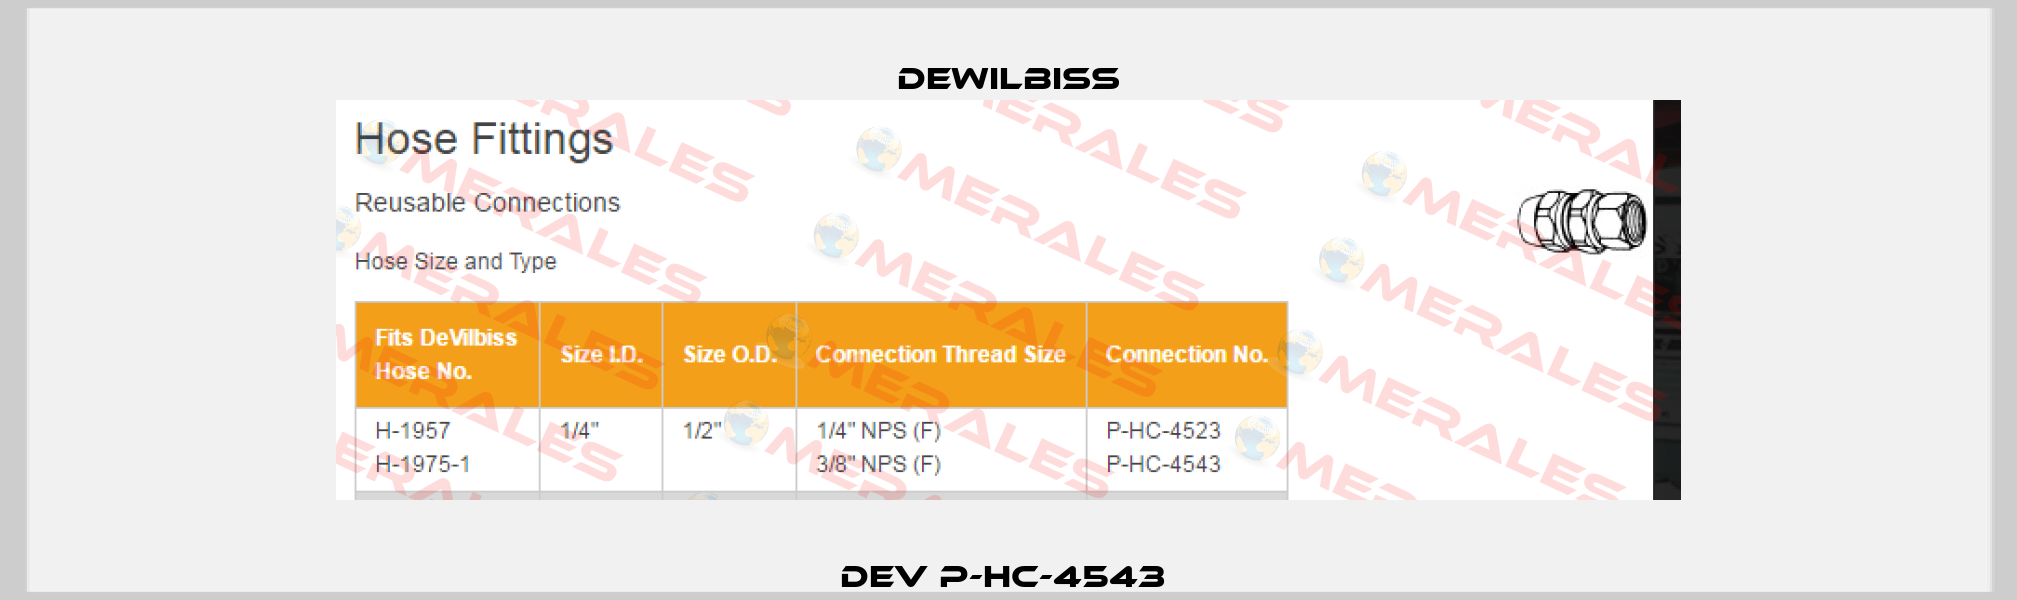 DEV P-HC-4543  DEWILBISS